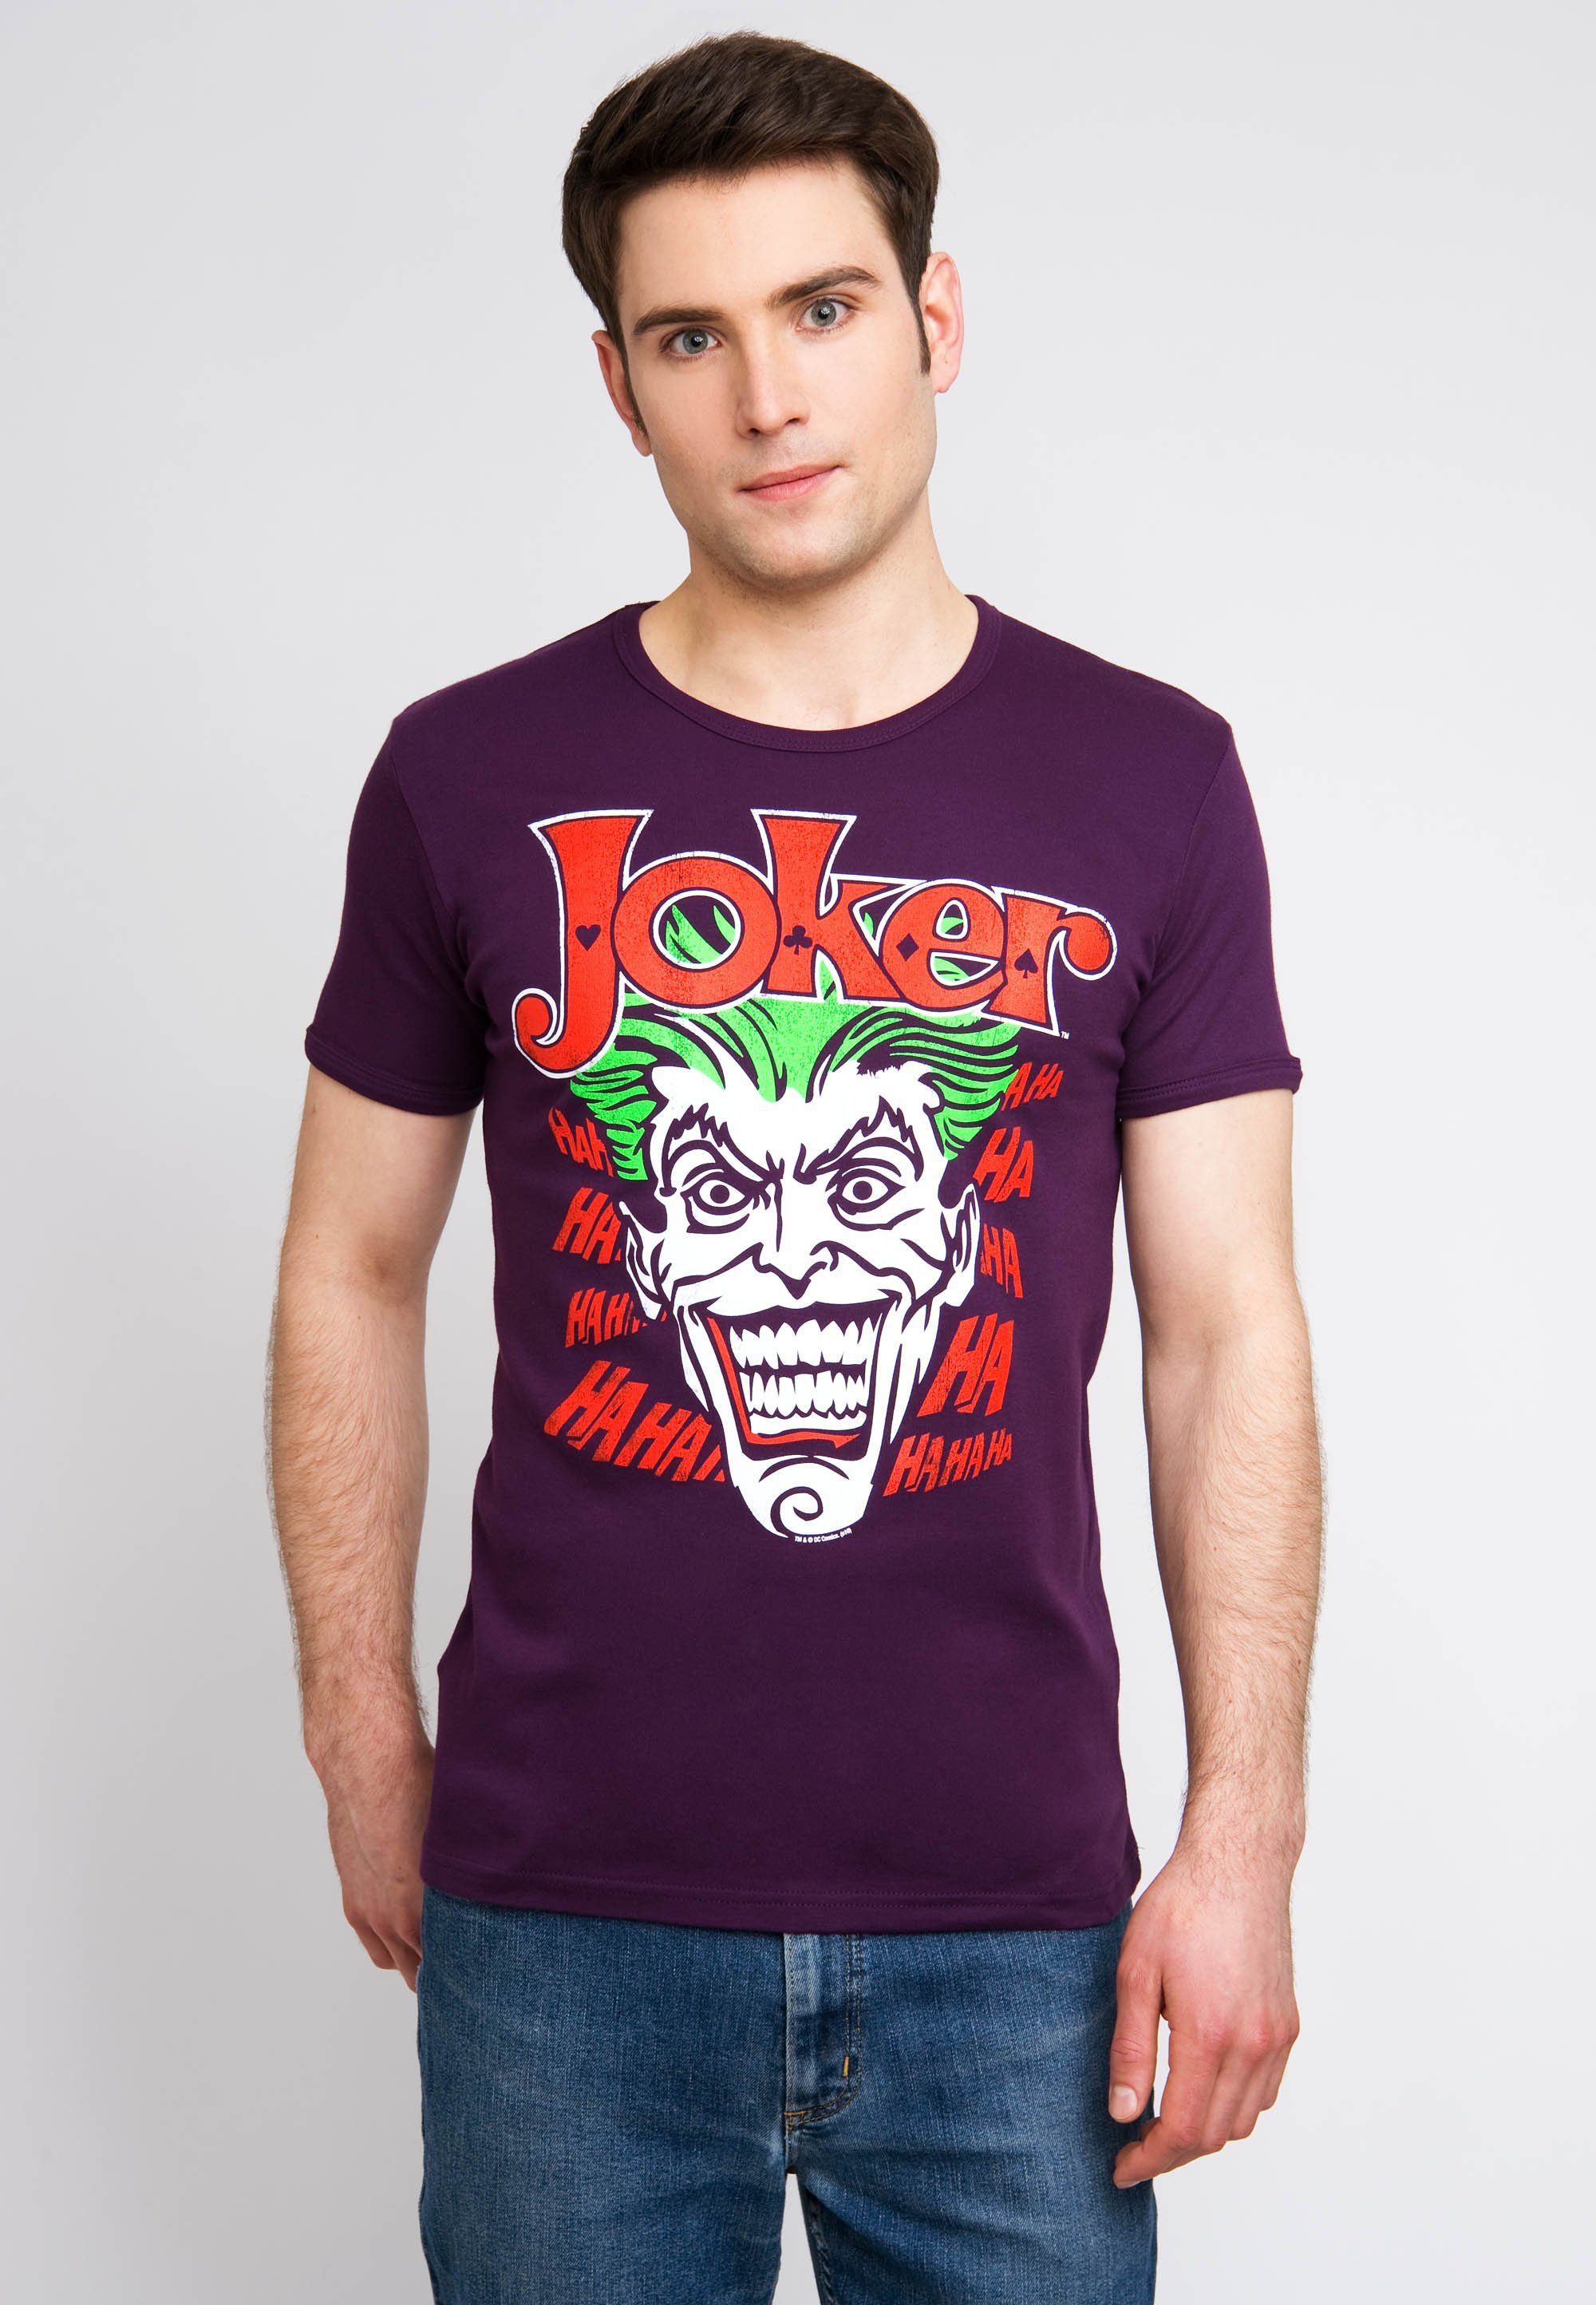 T-Shirt Batman LOGOSHIRT Joker Joker-Print bunt kultigem mit